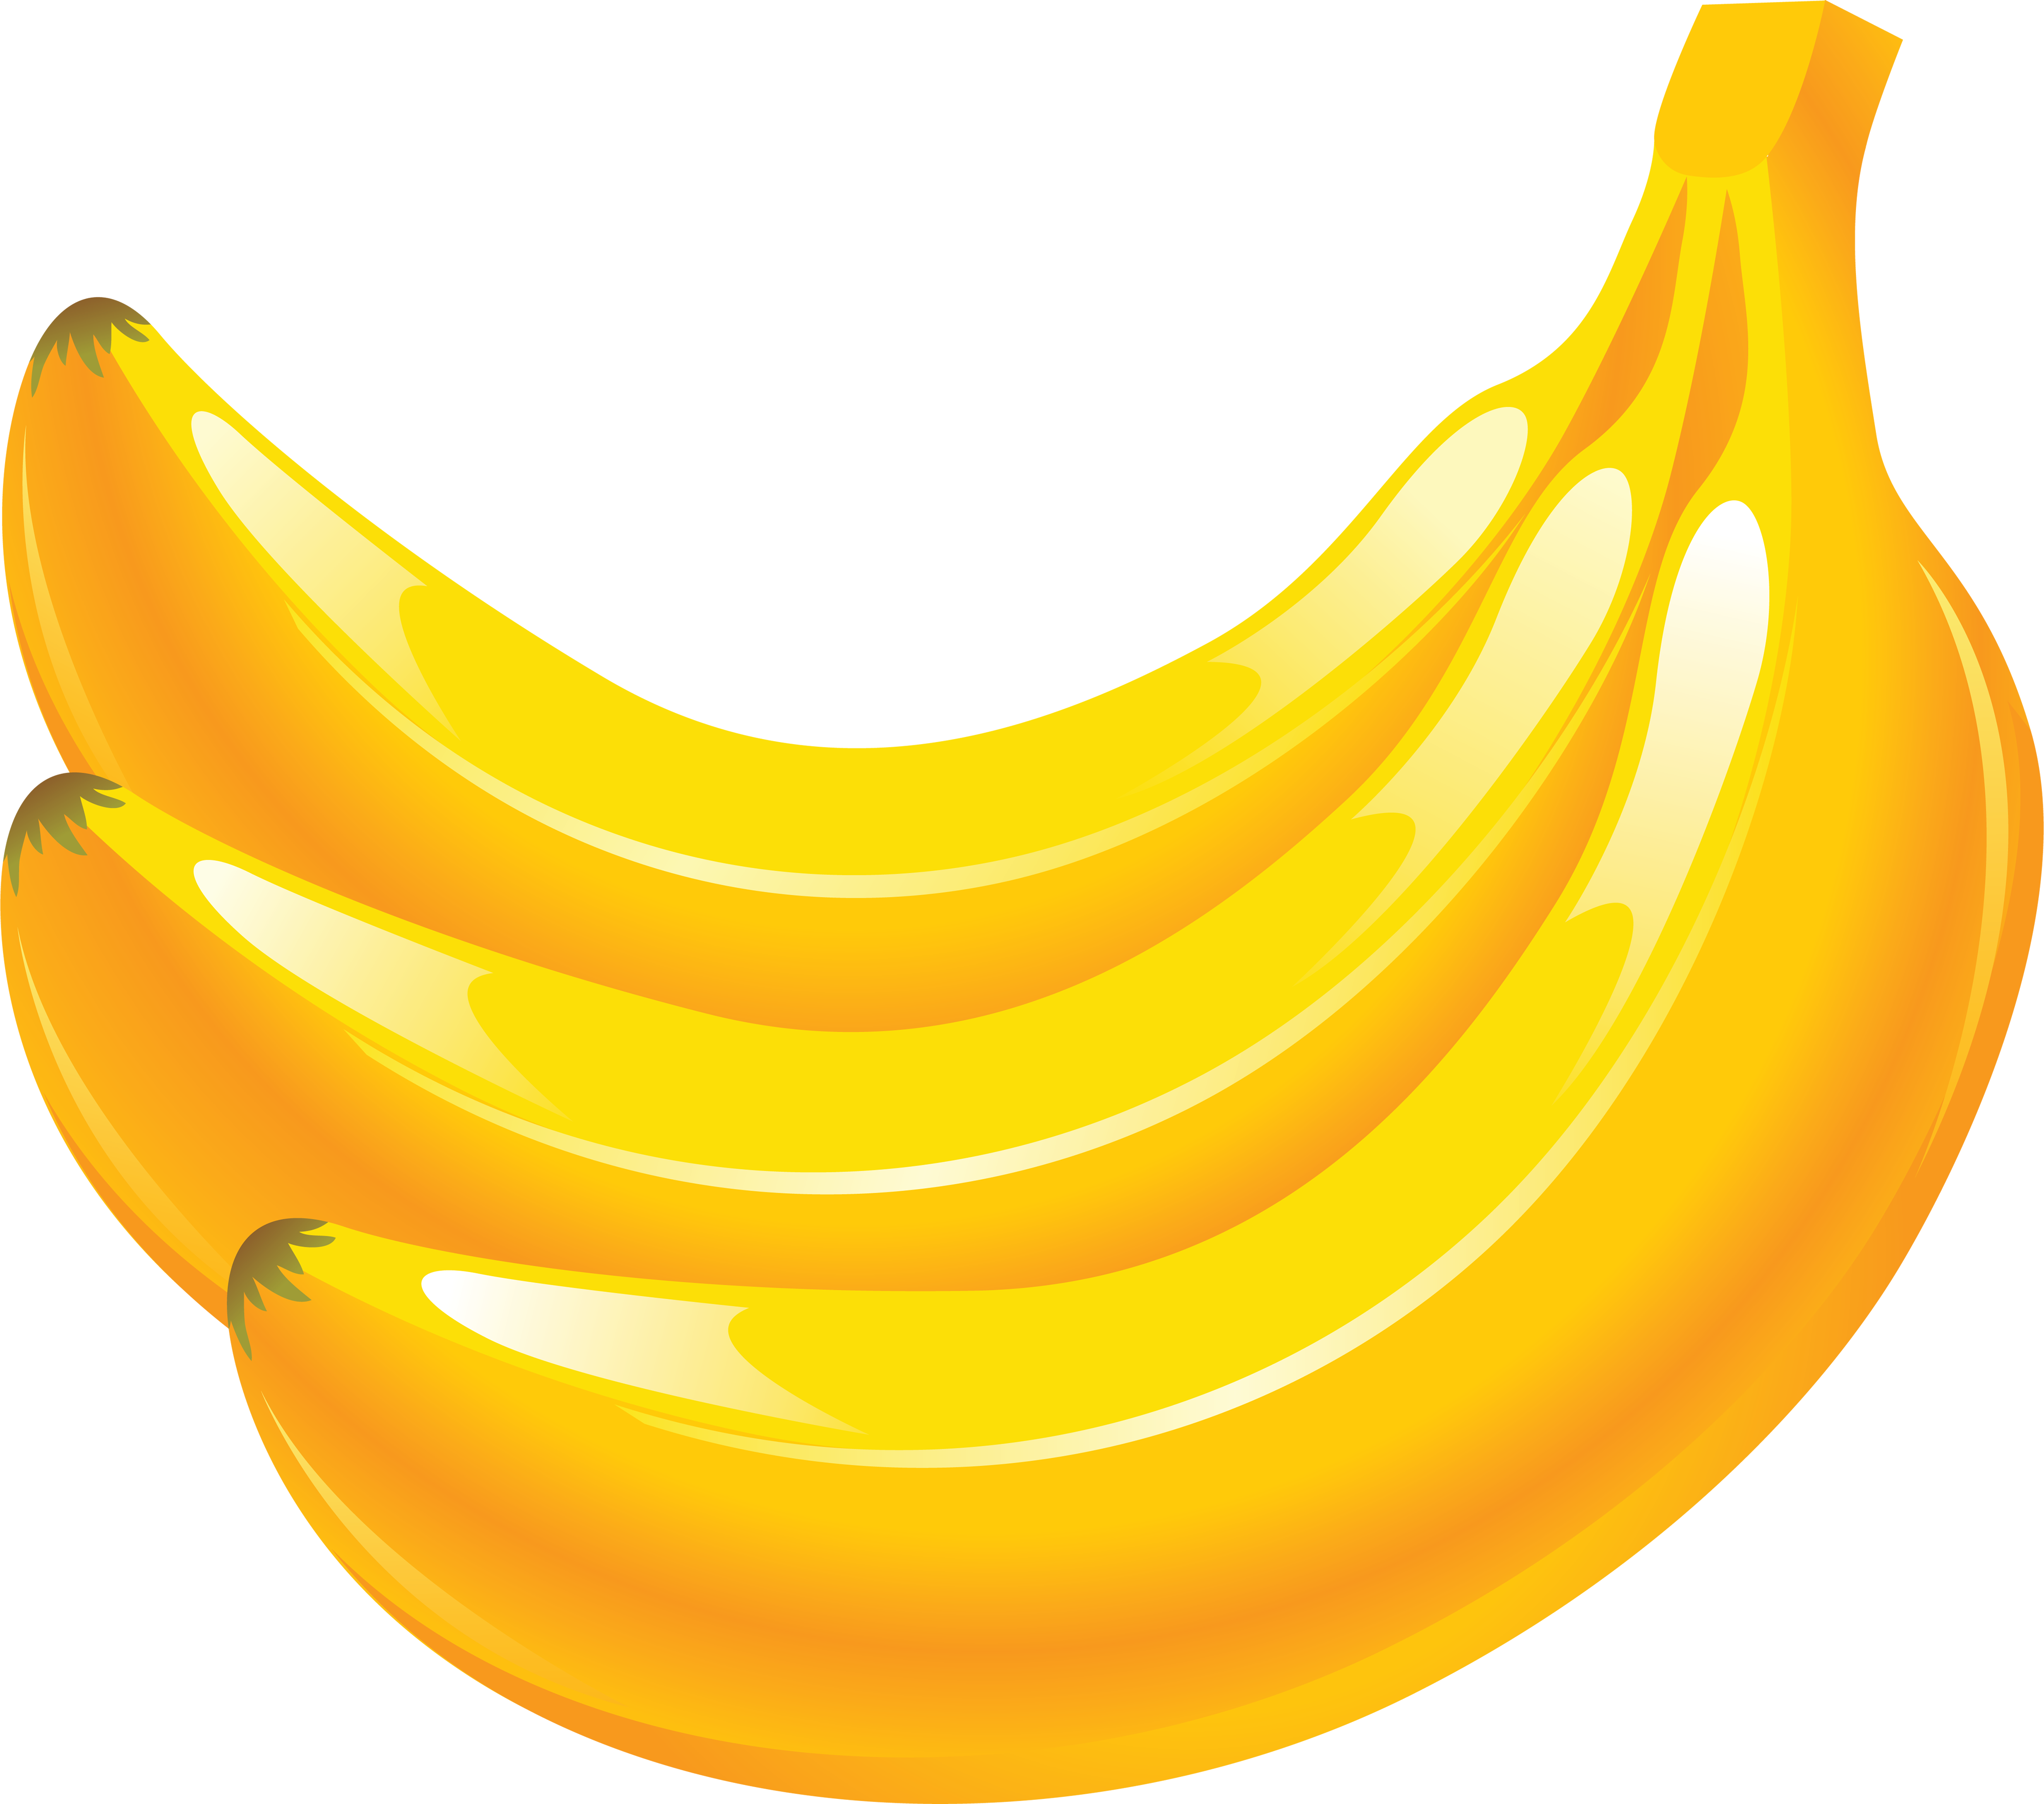 Banana Drawing PNG Image